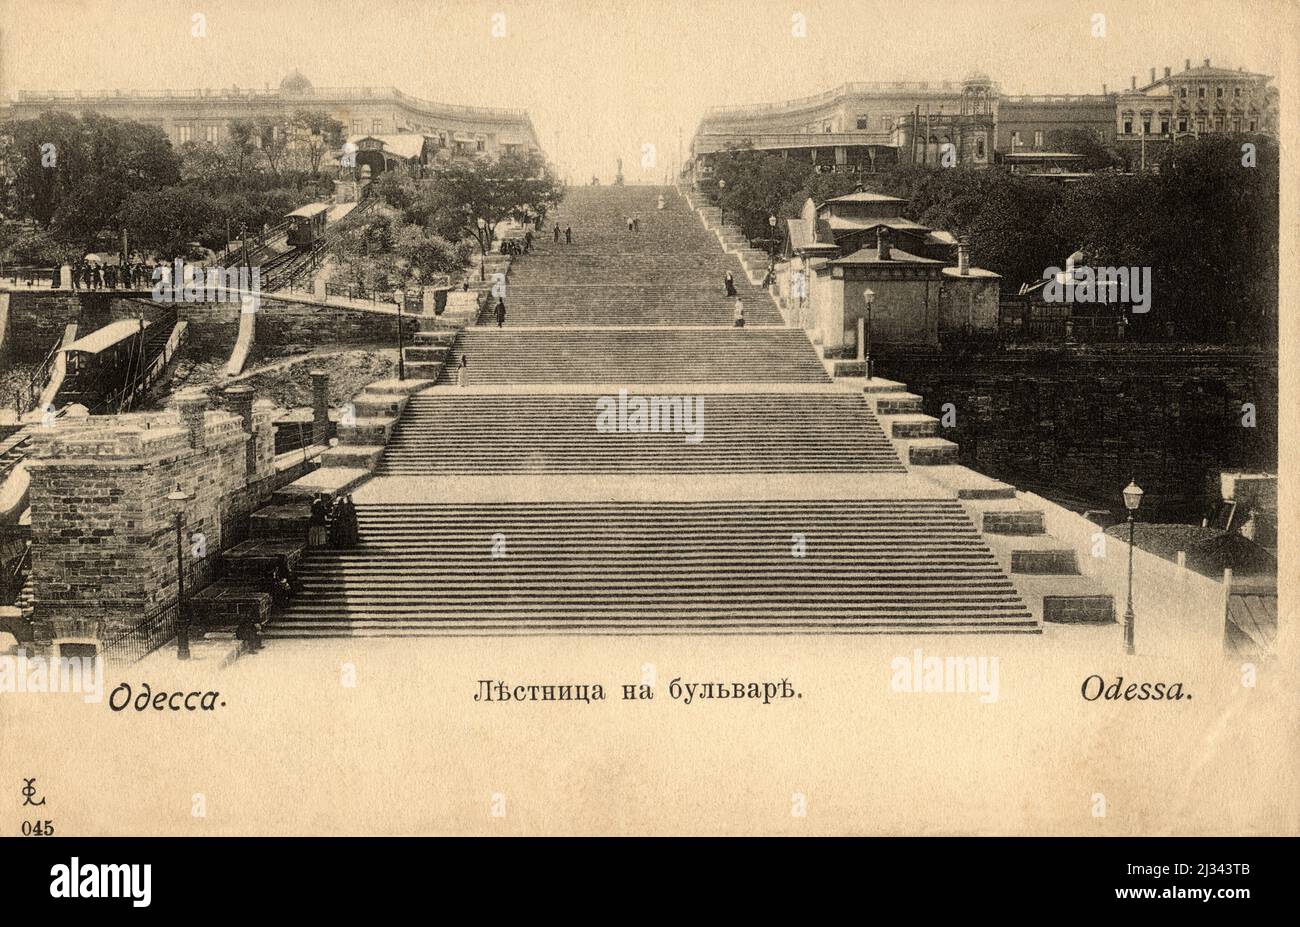 1900 CA , ODESSA , UCRAINA , IMPERO RUSSO : L'ESCALIER RICHELIEU .le scale Potemkin lunghe 142 metri ( costruite 1837–1841 ), che sono state famose nel film del 1925 ' Battleship Potemkin ' di Sergei Eisenstein . hey sono considerate un ingresso formale nella città dalla direzione del mare e sono il simbolo più noto di Odessa . Le scale erano originariamente conosciute come i gradini del Boulevard, la Scala Gigante, o i gradini Richelieu. Il gradino superiore è largo 12,5 metri (41 piedi) e il gradino più basso è largo 21,7 metri (70,8 piedi). La scala si estende per 142 metri, ma dà t Foto Stock